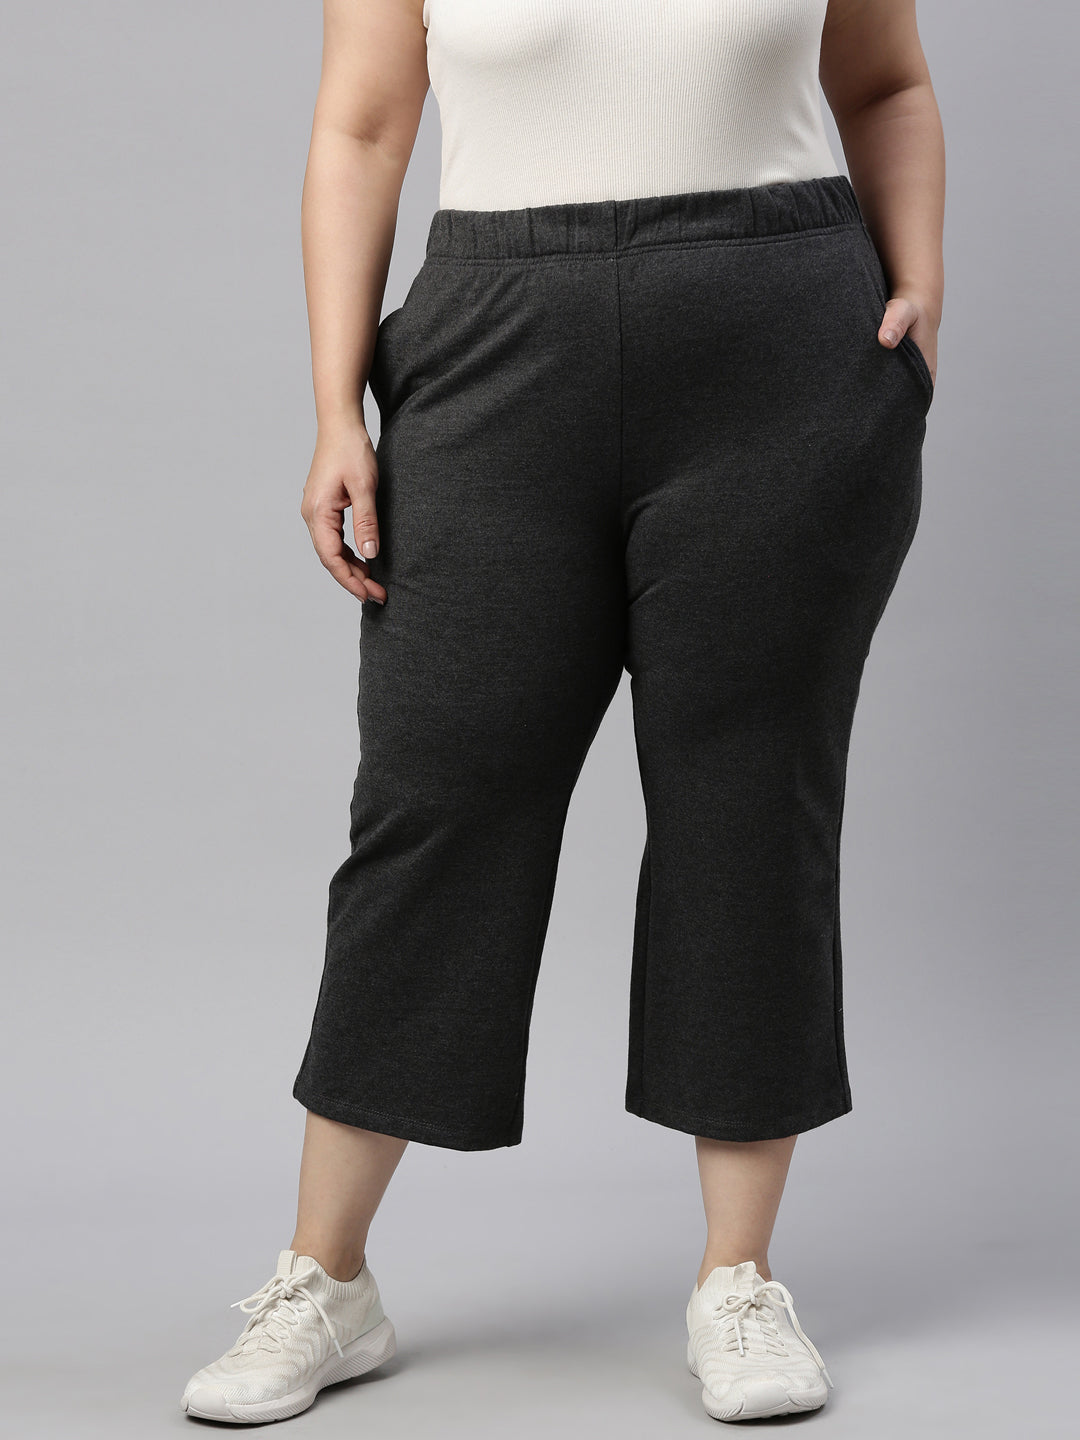 Women's FILA Plus Size Day Tripper Drawstring Pants Size 3XL